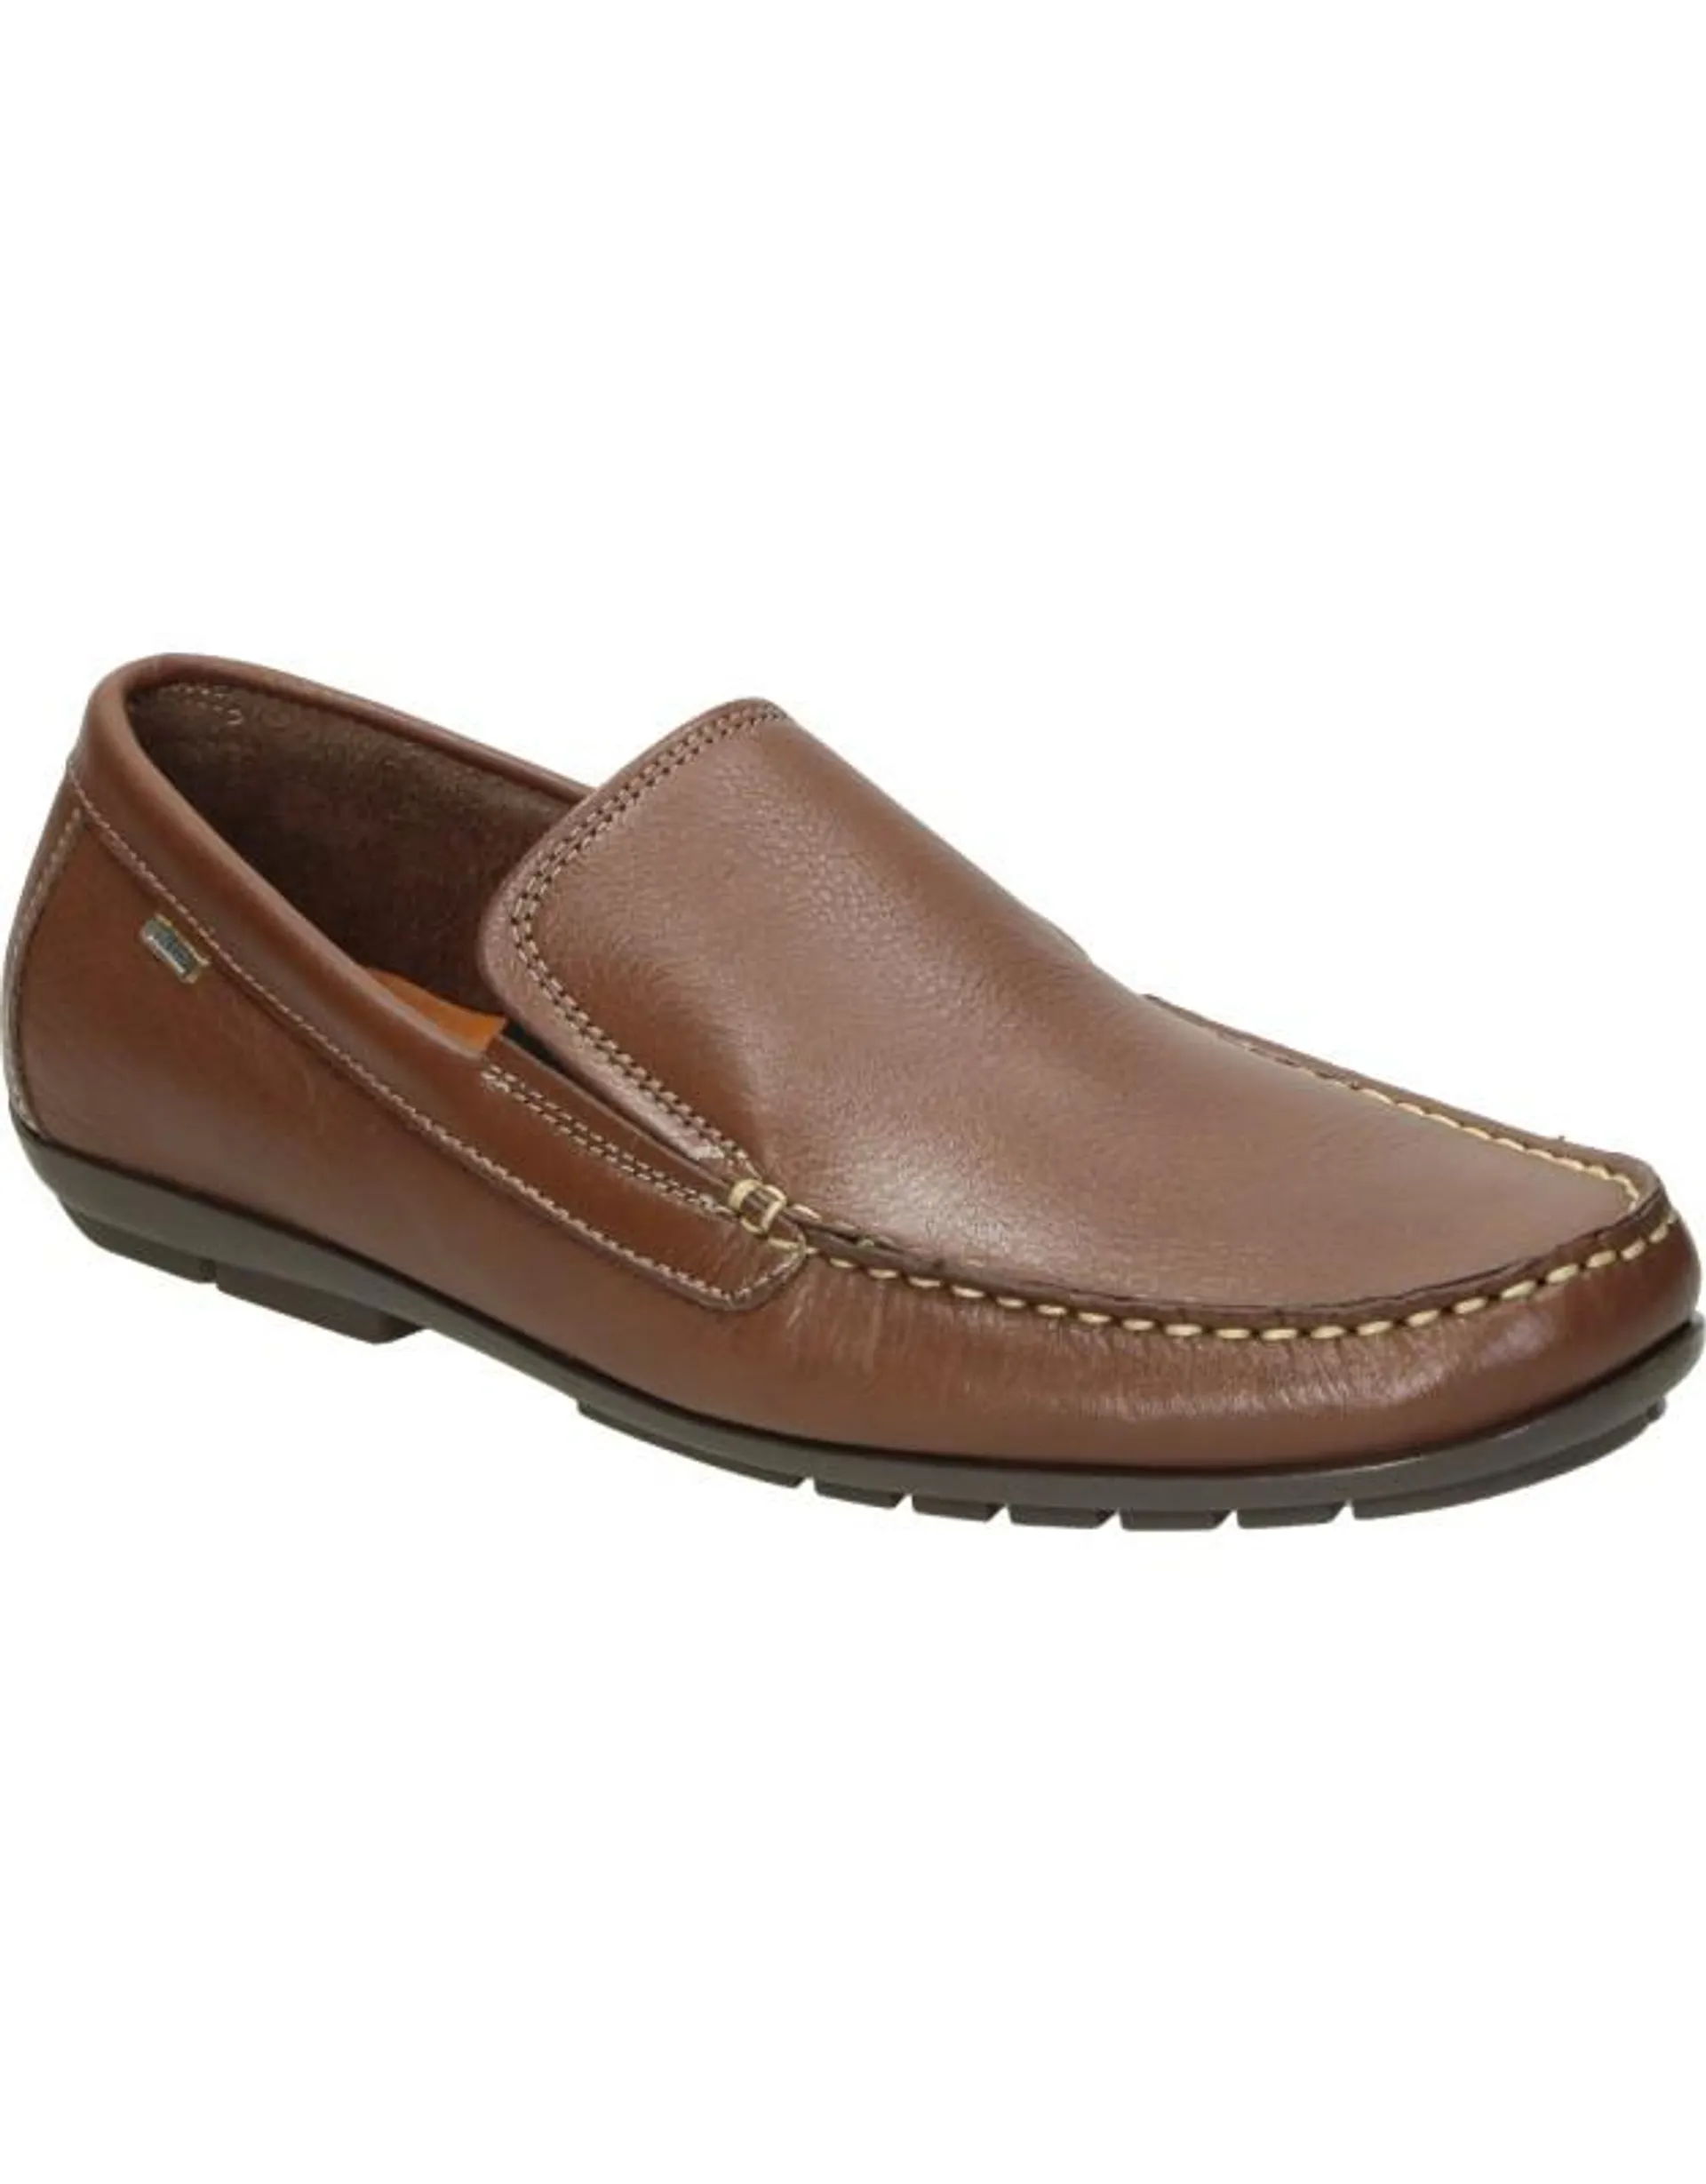 Zapatos NUPER 7901 marrón para hombre